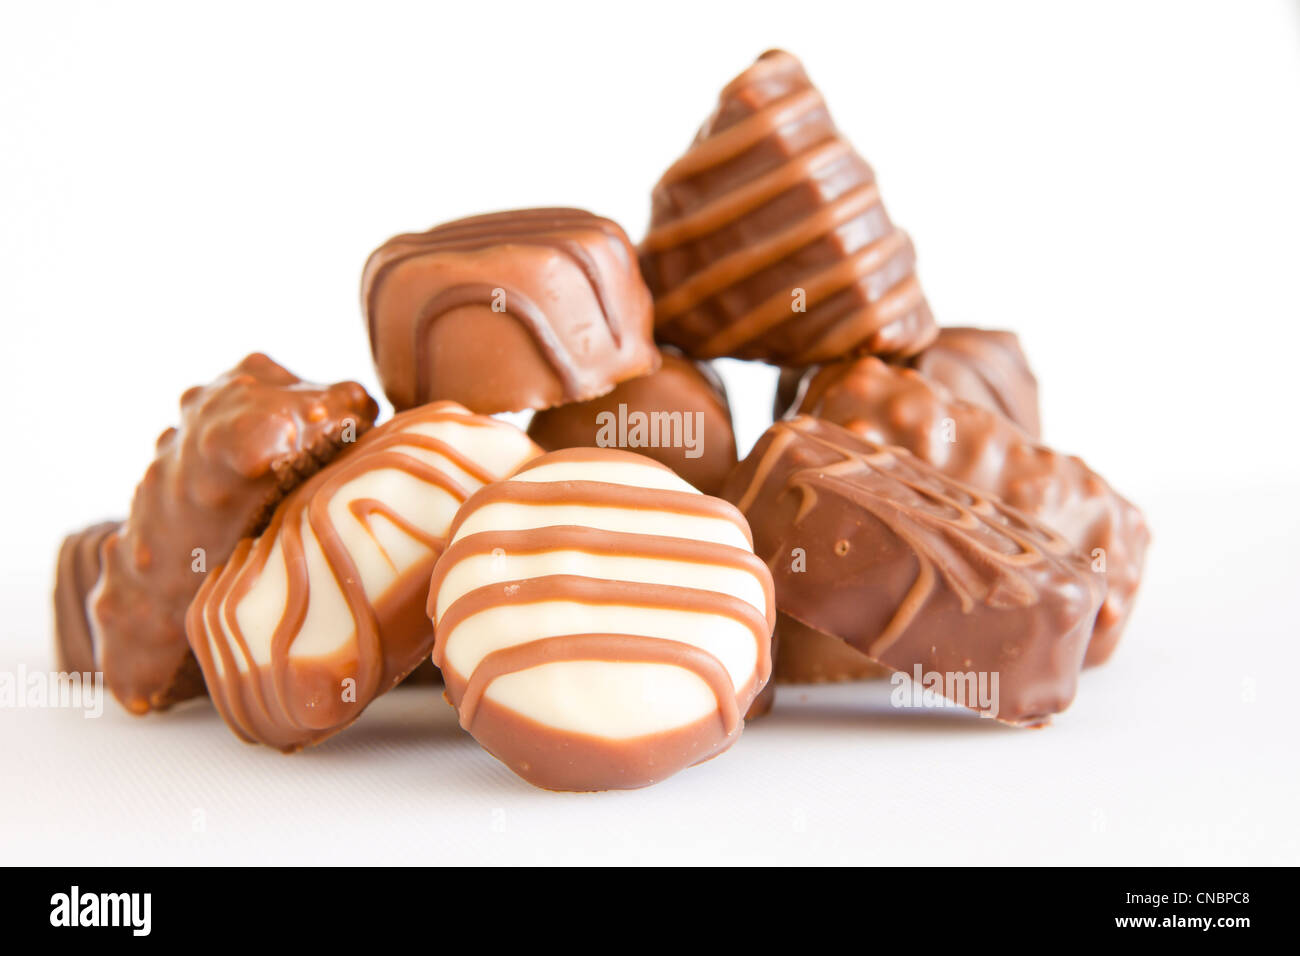 Assortiment de bonbons de chocolat isolé sur fond blanc Banque D'Images